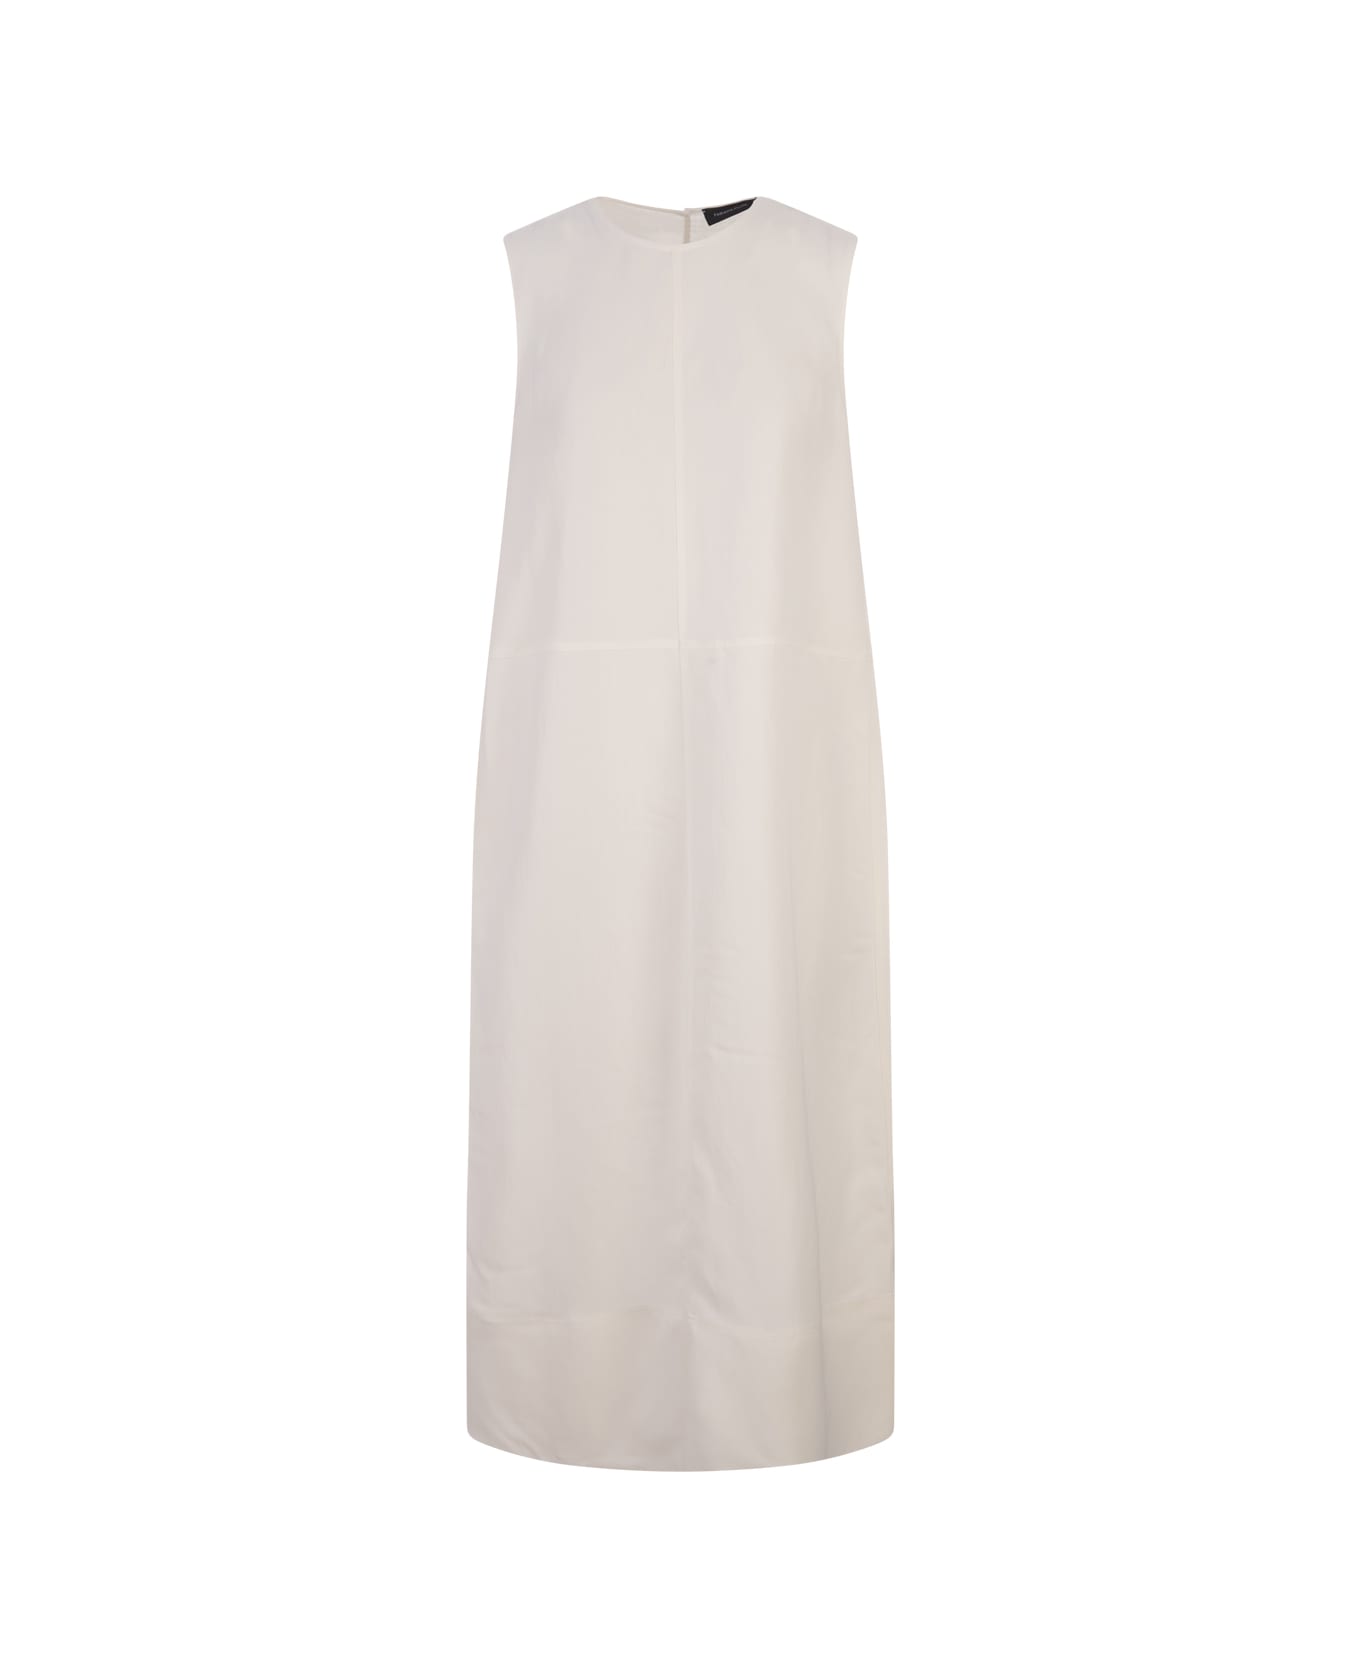 Fabiana Filippi White Linen And Viscose Dress - White